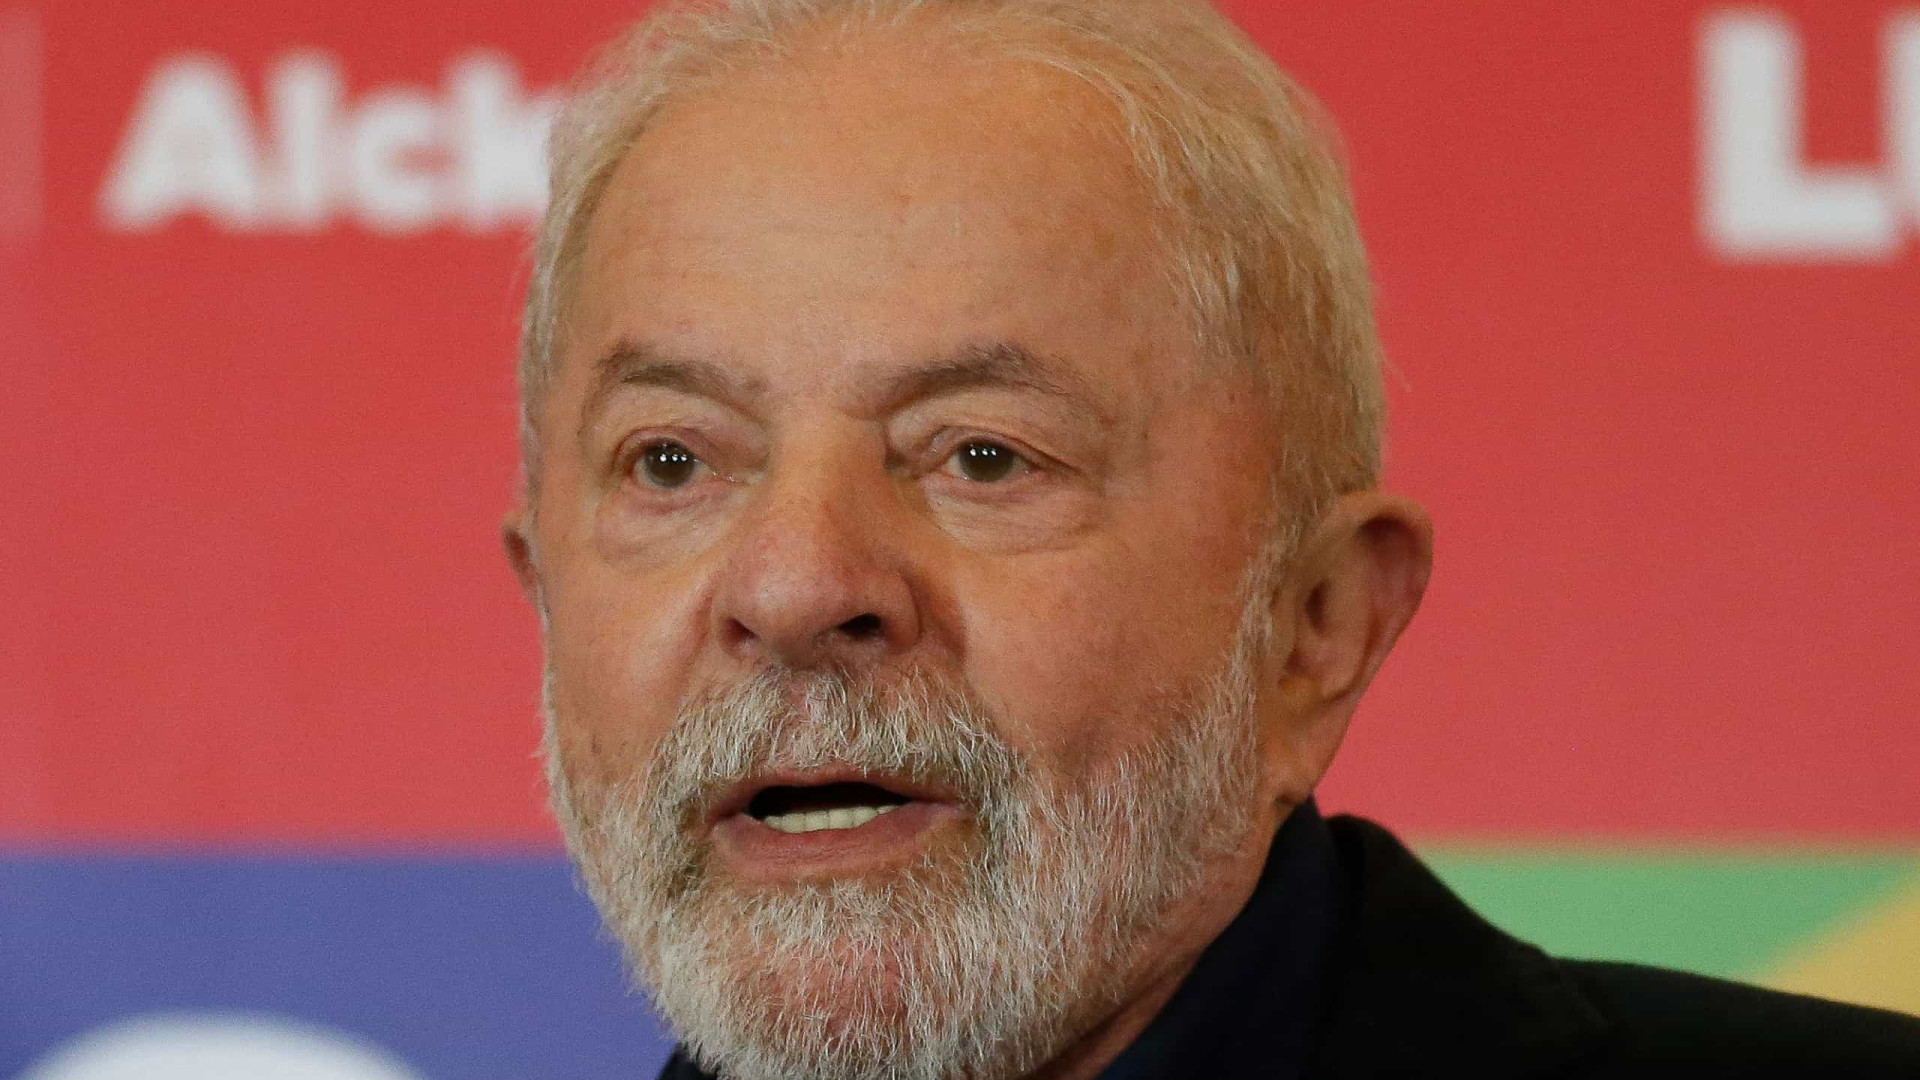 Discurso de Lula sobre corrupção cambaleia após se ajustar a cada momento político